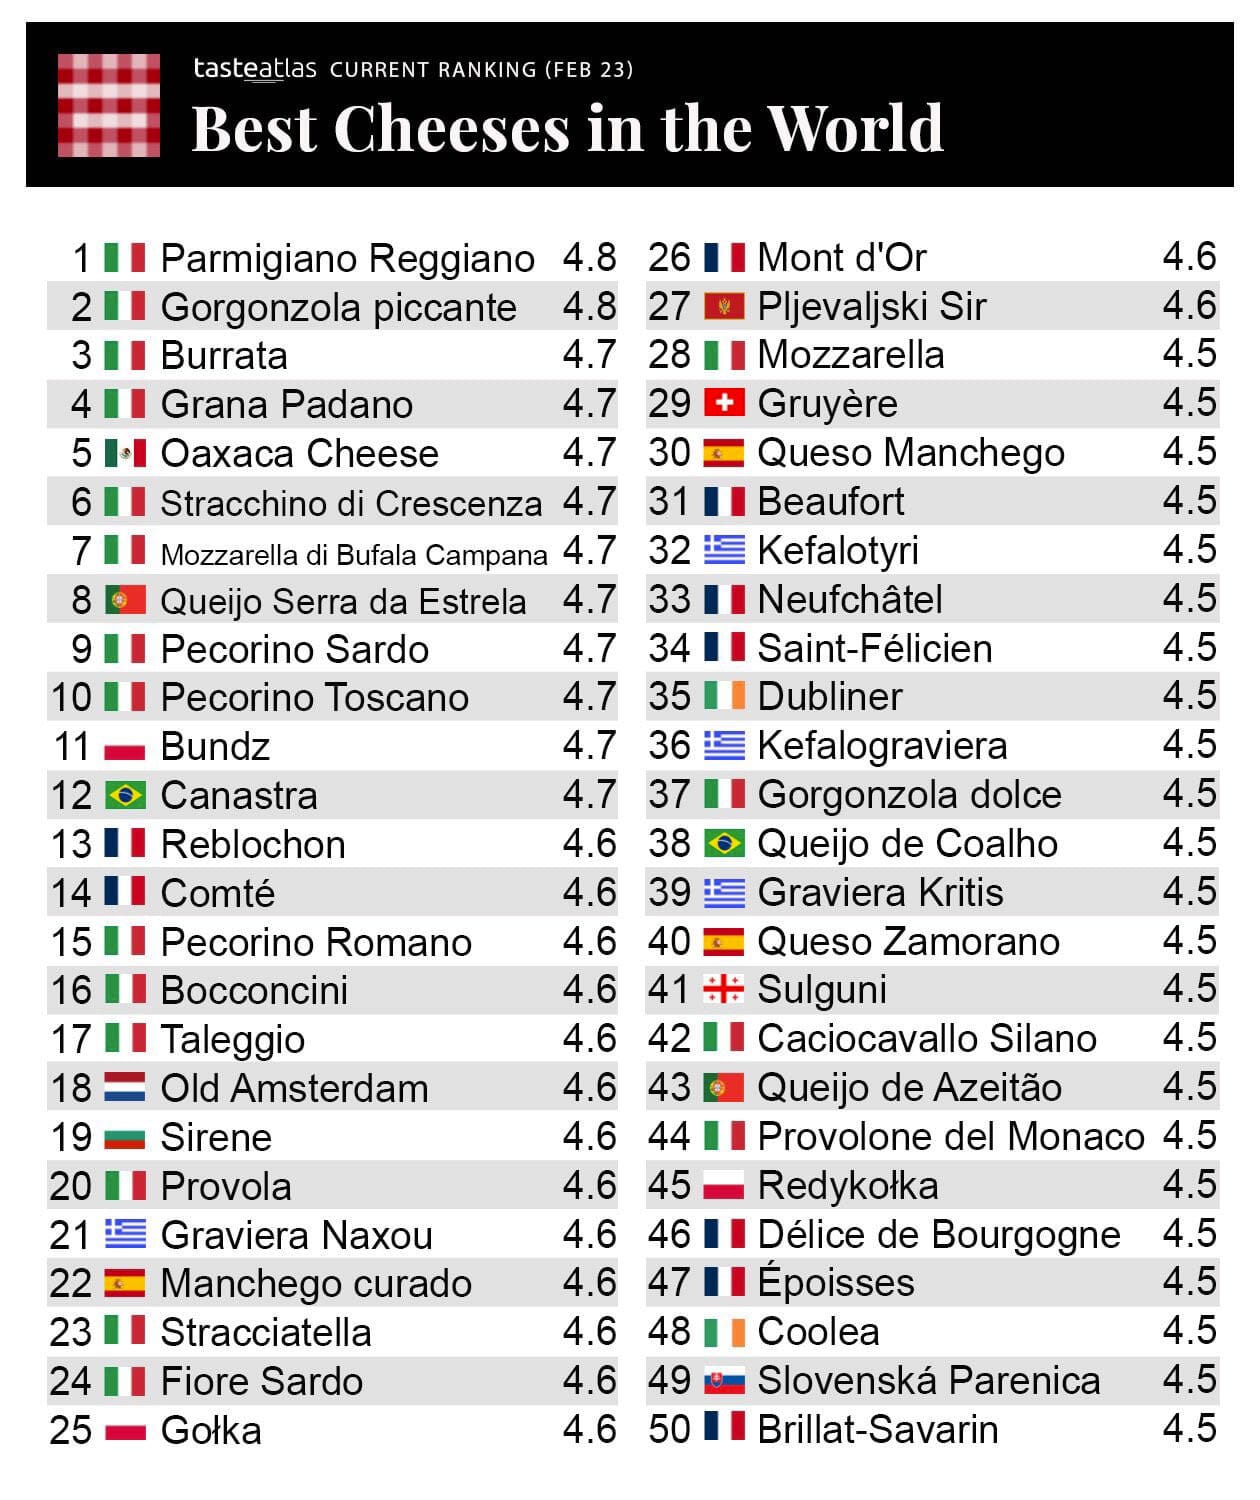 Italian cheeses on top of the world, TasteAtlas 2023 ranking